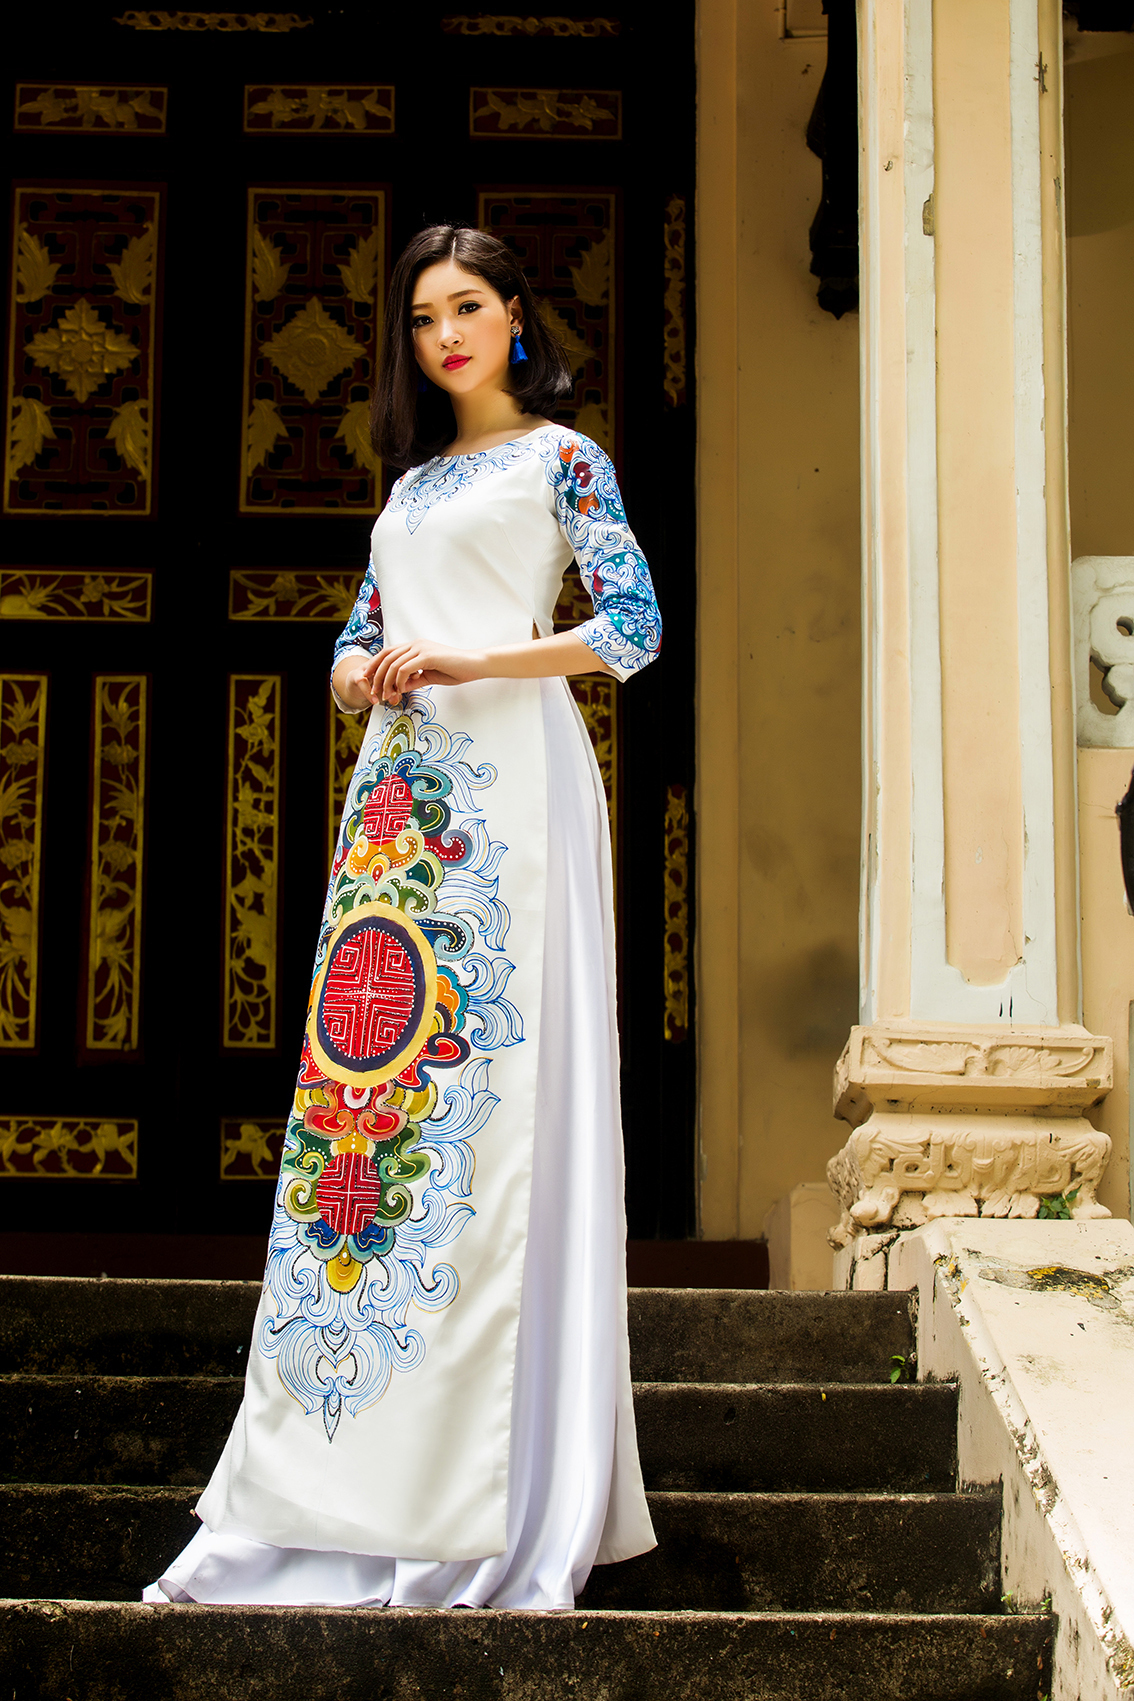 Ba chị em Phạm Thùy Linh đằm thắm trong trang phục áo dài